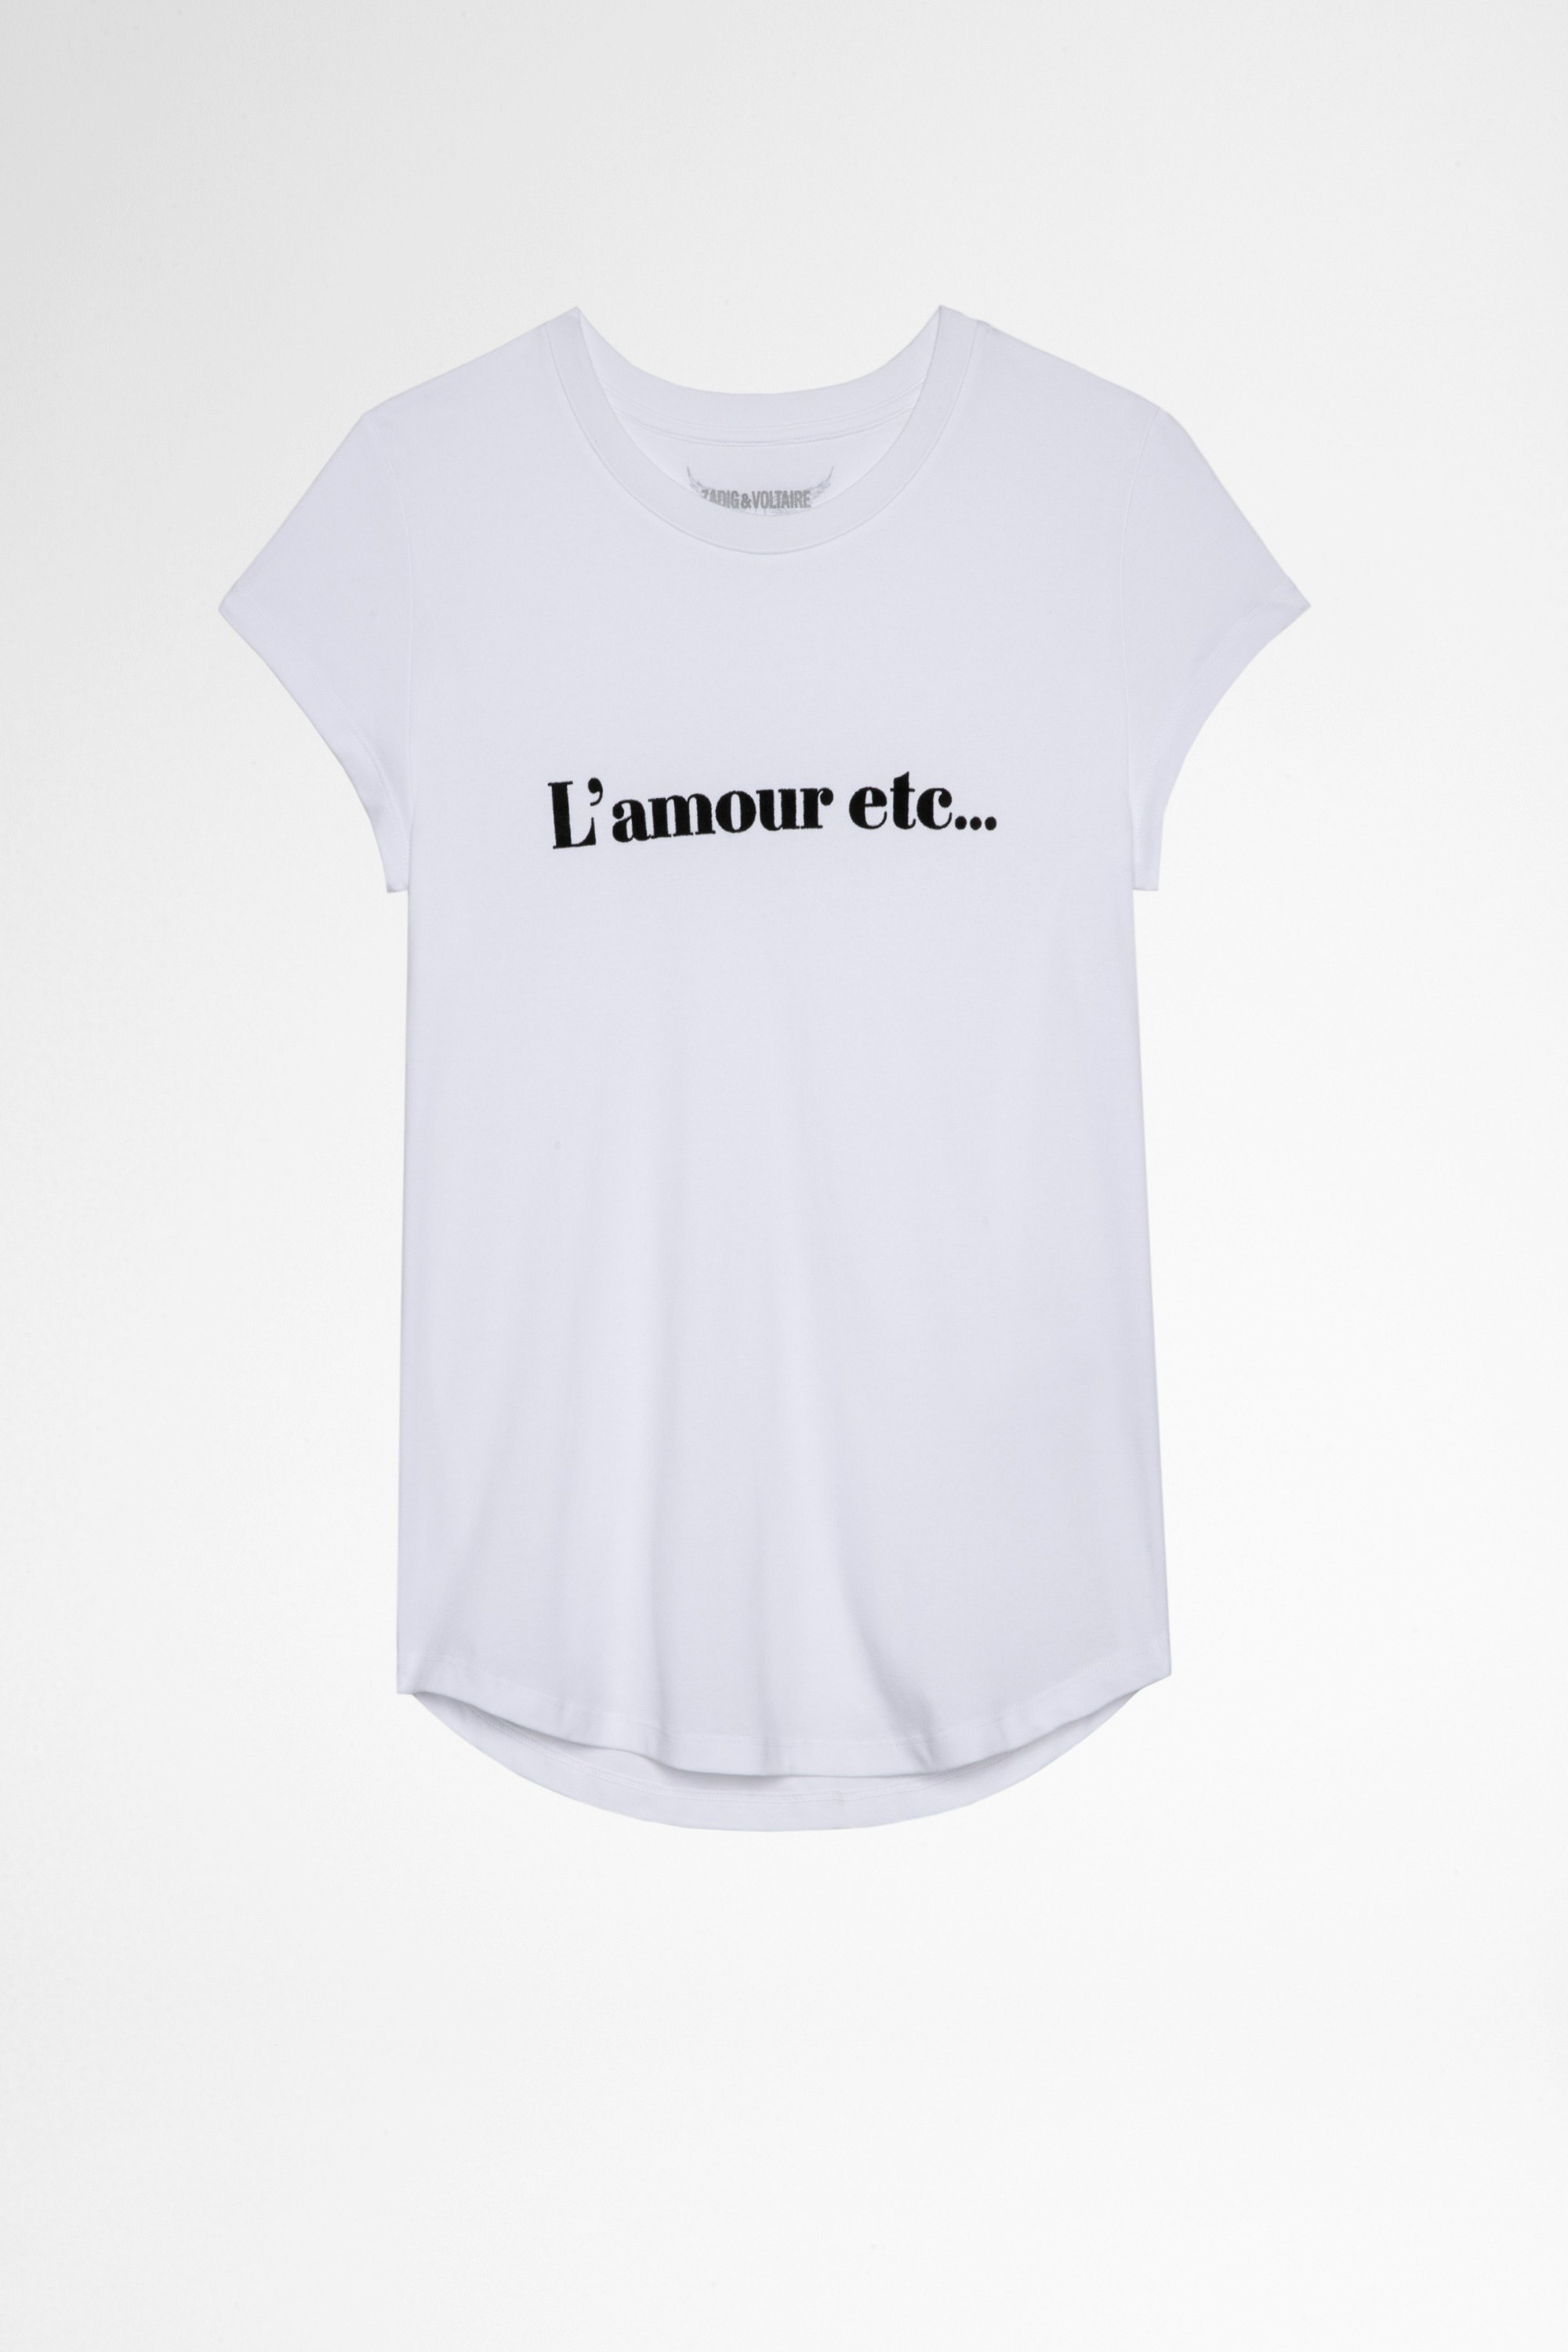 Camiseta Woop L'amour etc Camiseta blanca de algodón L'amour etc... Mujer